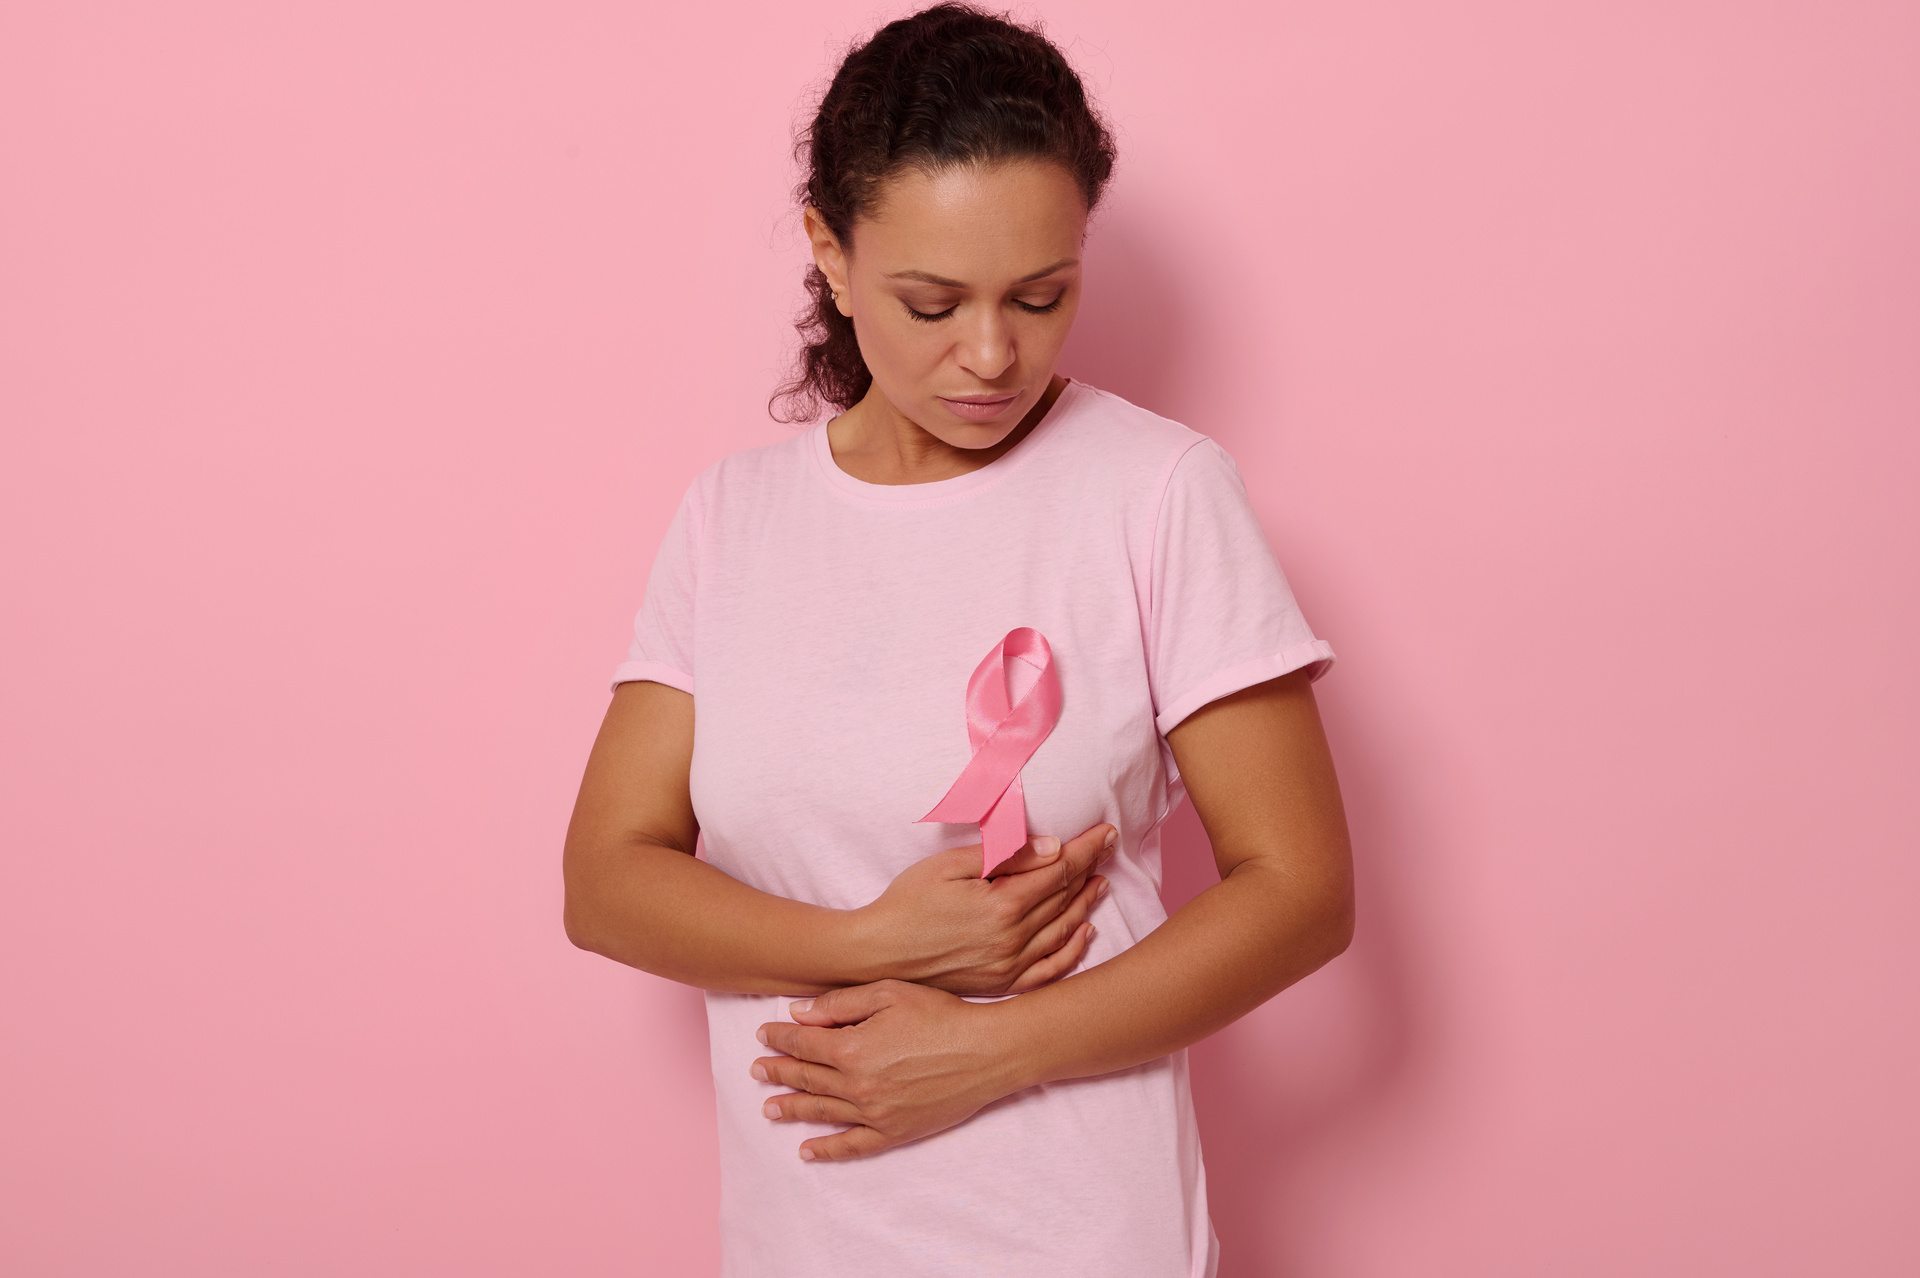 Octubre, el mes para concientizar sobre cáncer de mama